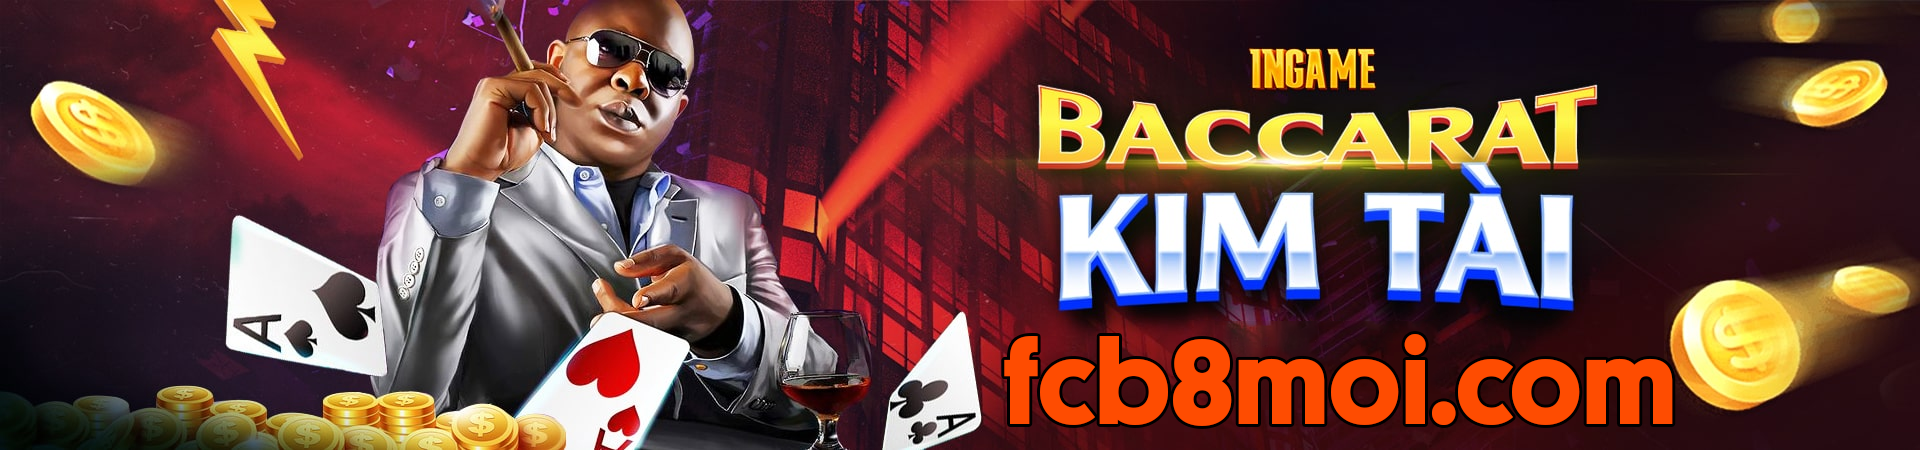 FCB8 - Nhà cái FCB8 Cá cược uy tín #1 Việt Nam, Link FCB8 Casino